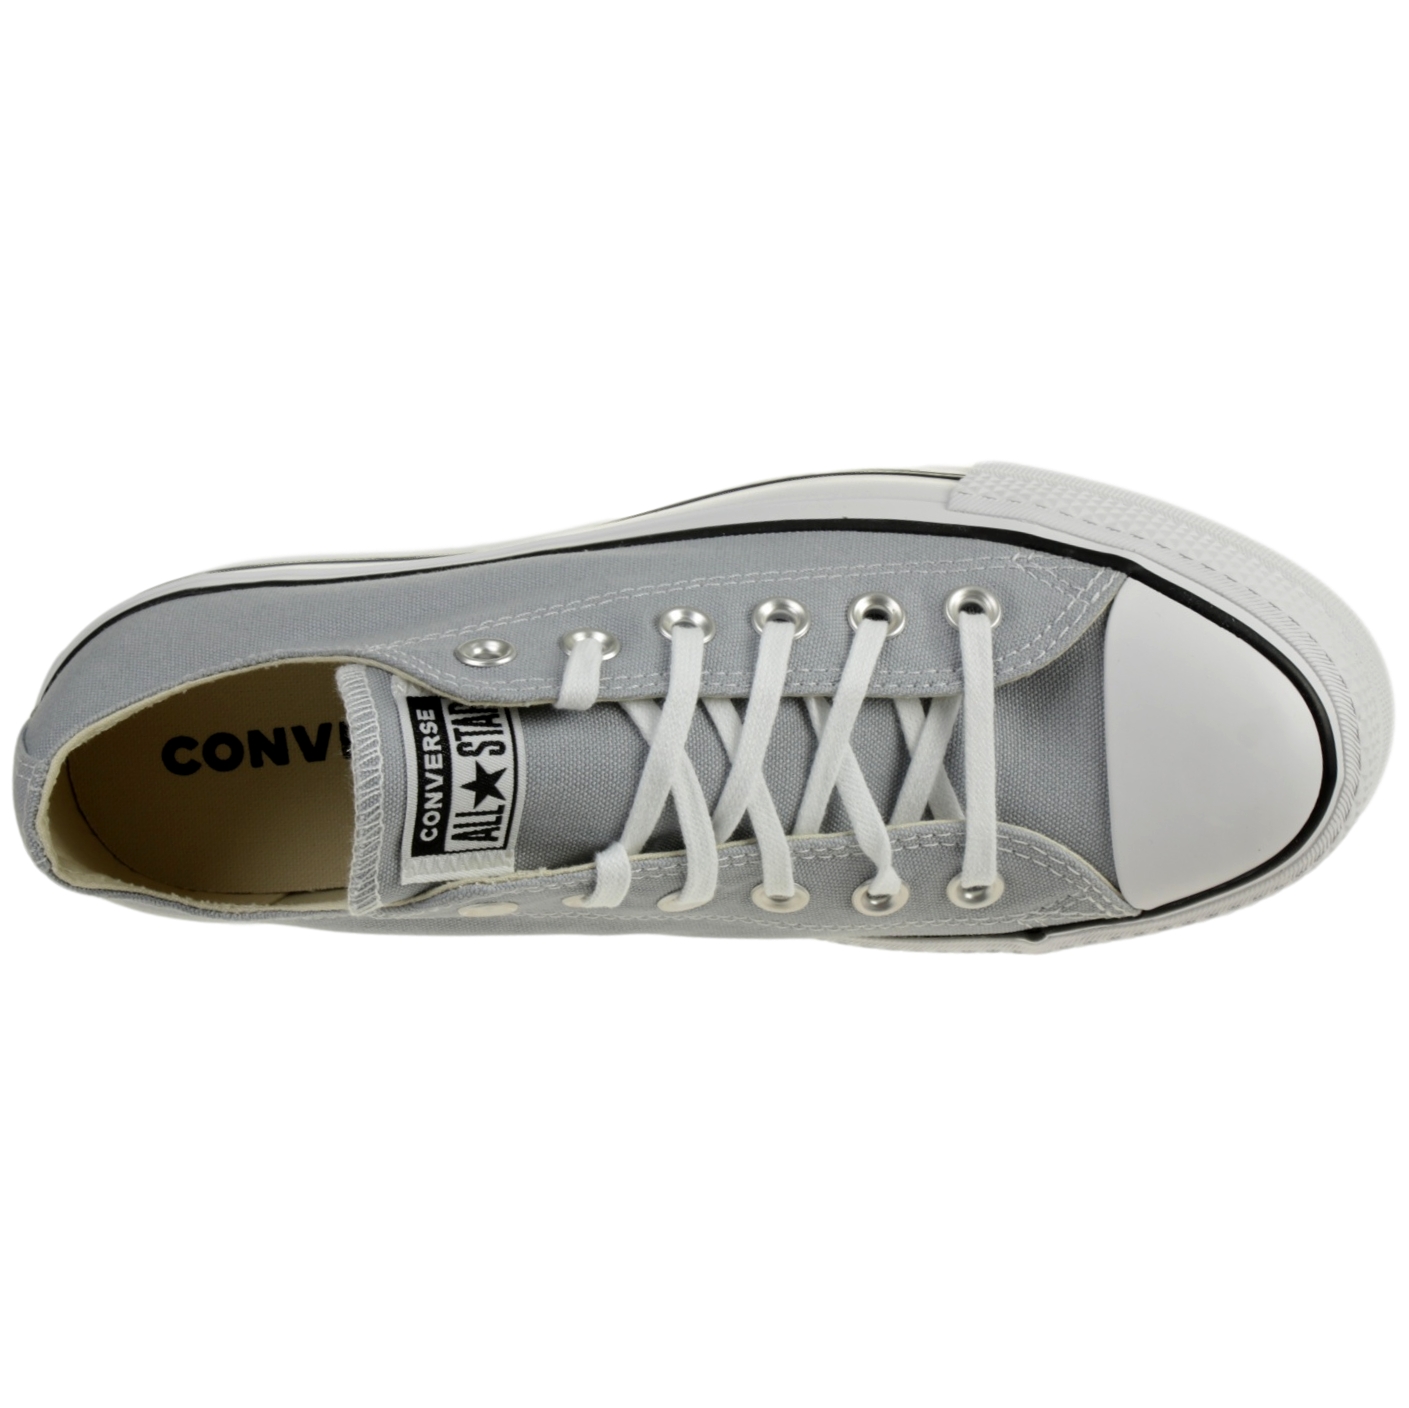 Converse Damen Seasonal Color Platform CTAS Low Top Sneaker 566757C Grau